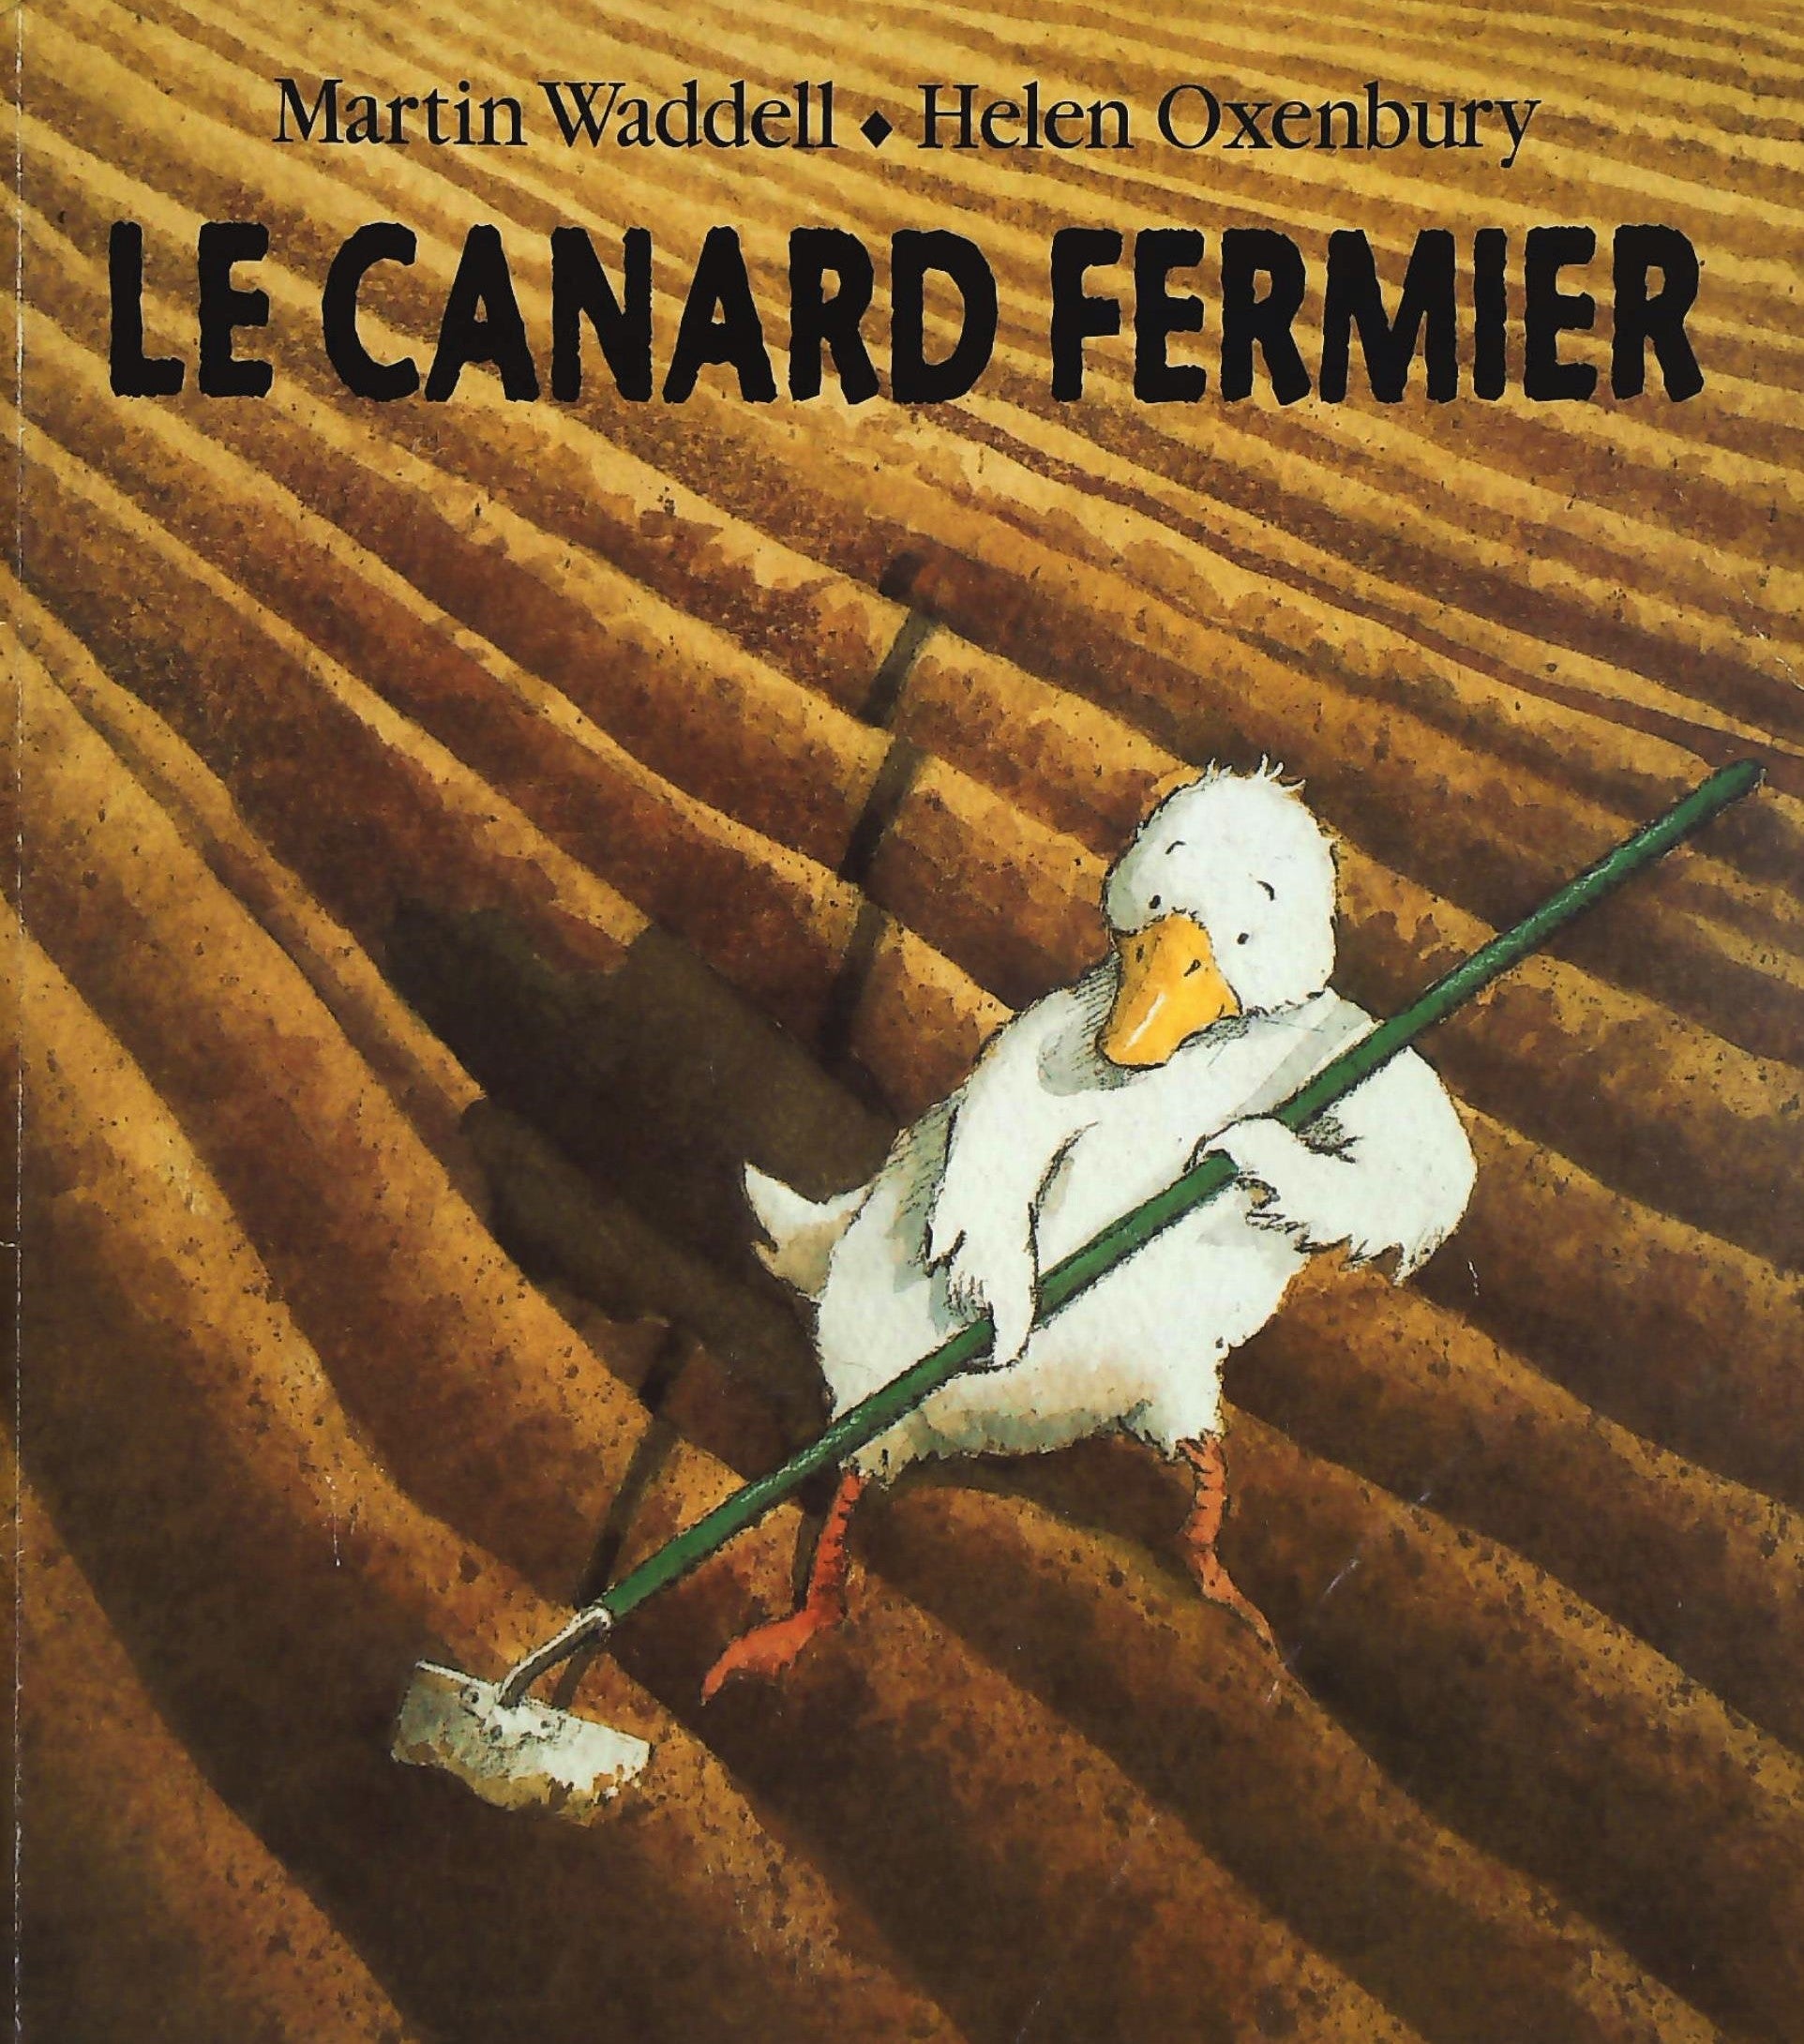 Livre ISBN 2211058019 Le canard fermier (Martin Waddell)